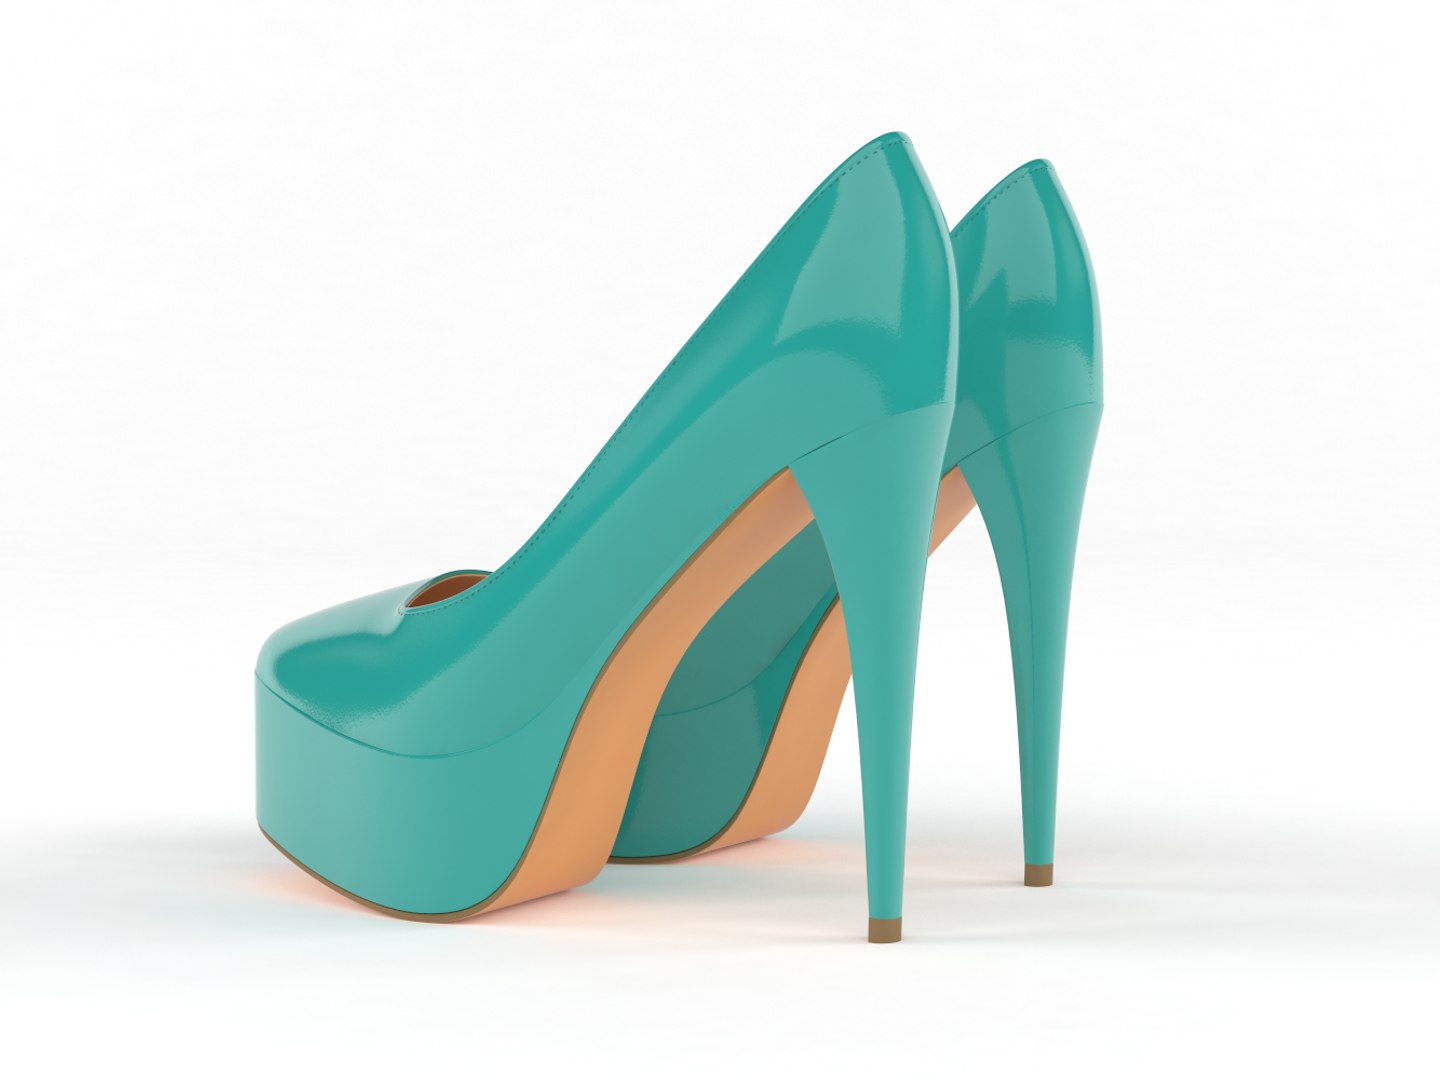 Realistic heels women shoes 3D model - TurboSquid 1514532